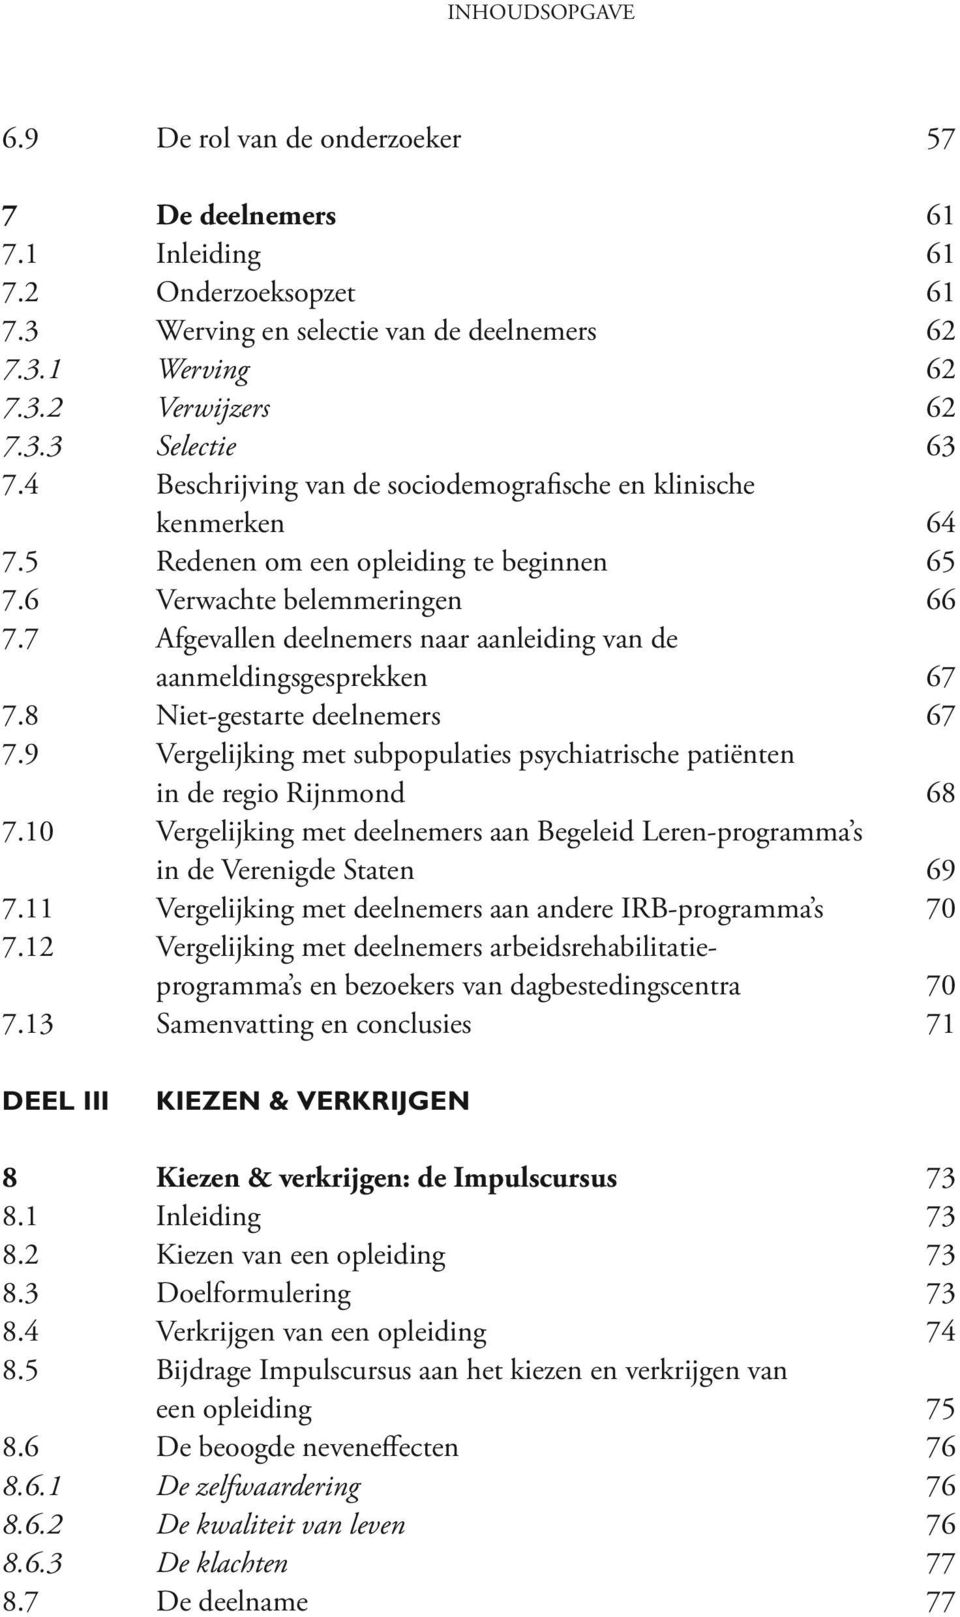 7 Afgevallen deelnemers naar aanleiding van de aanmeldingsgesprekken 67 7.8 Niet-gestarte deelnemers 67 7.9 Vergelijking met subpopulaties psychiatrische patiënten in de regio Rijnmond 68 7.